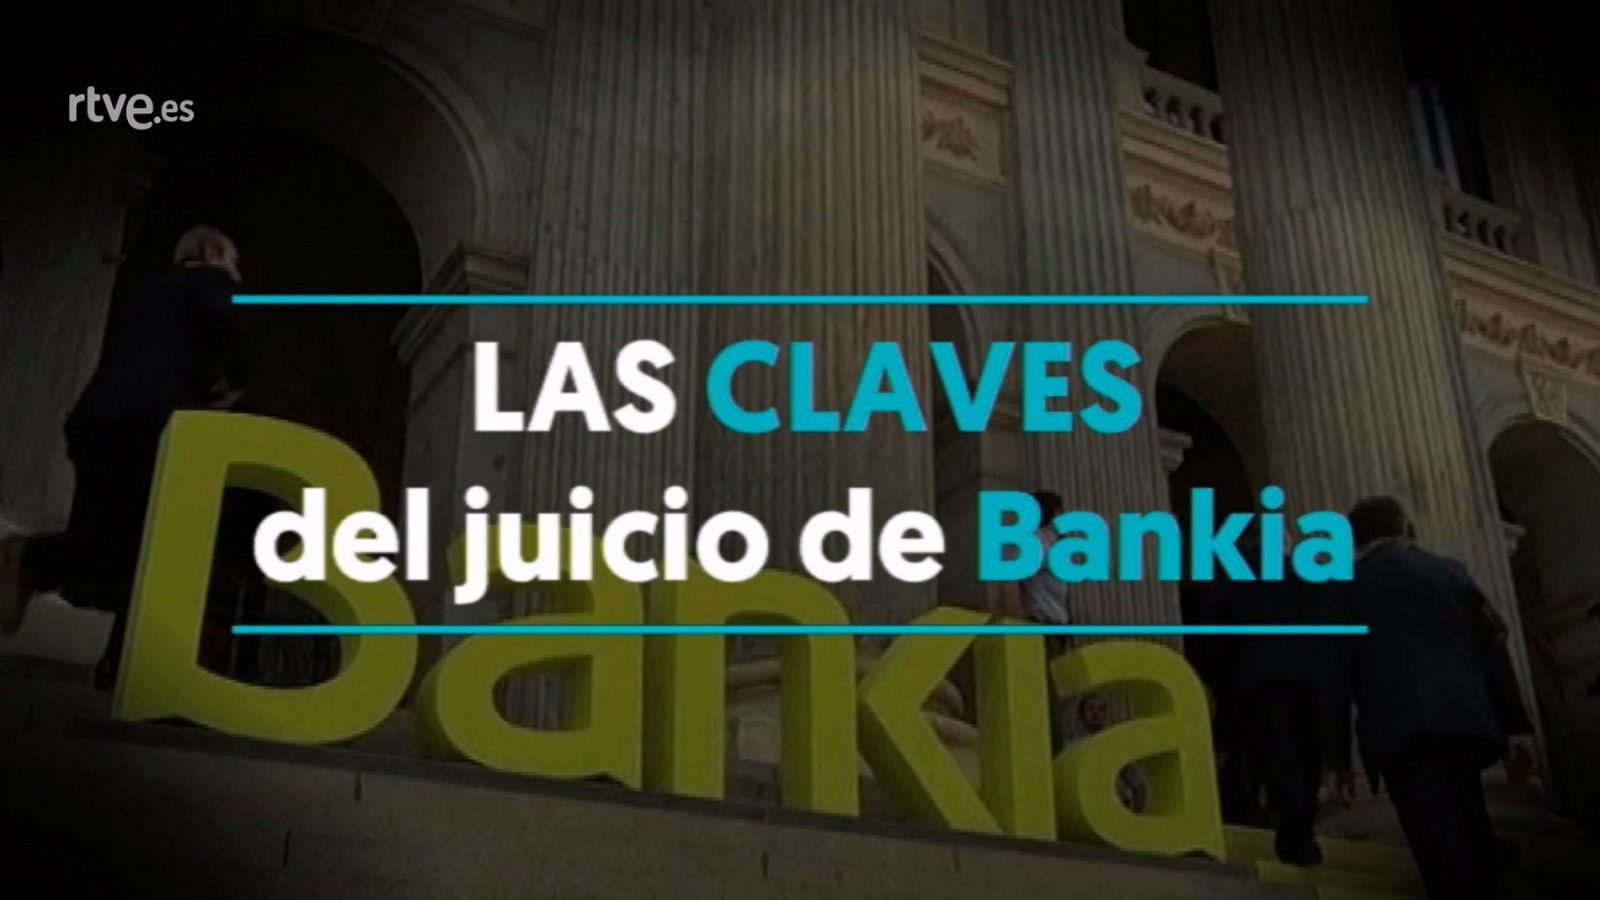 Todo lo que necesitas saber sobre el juicio de Bankia